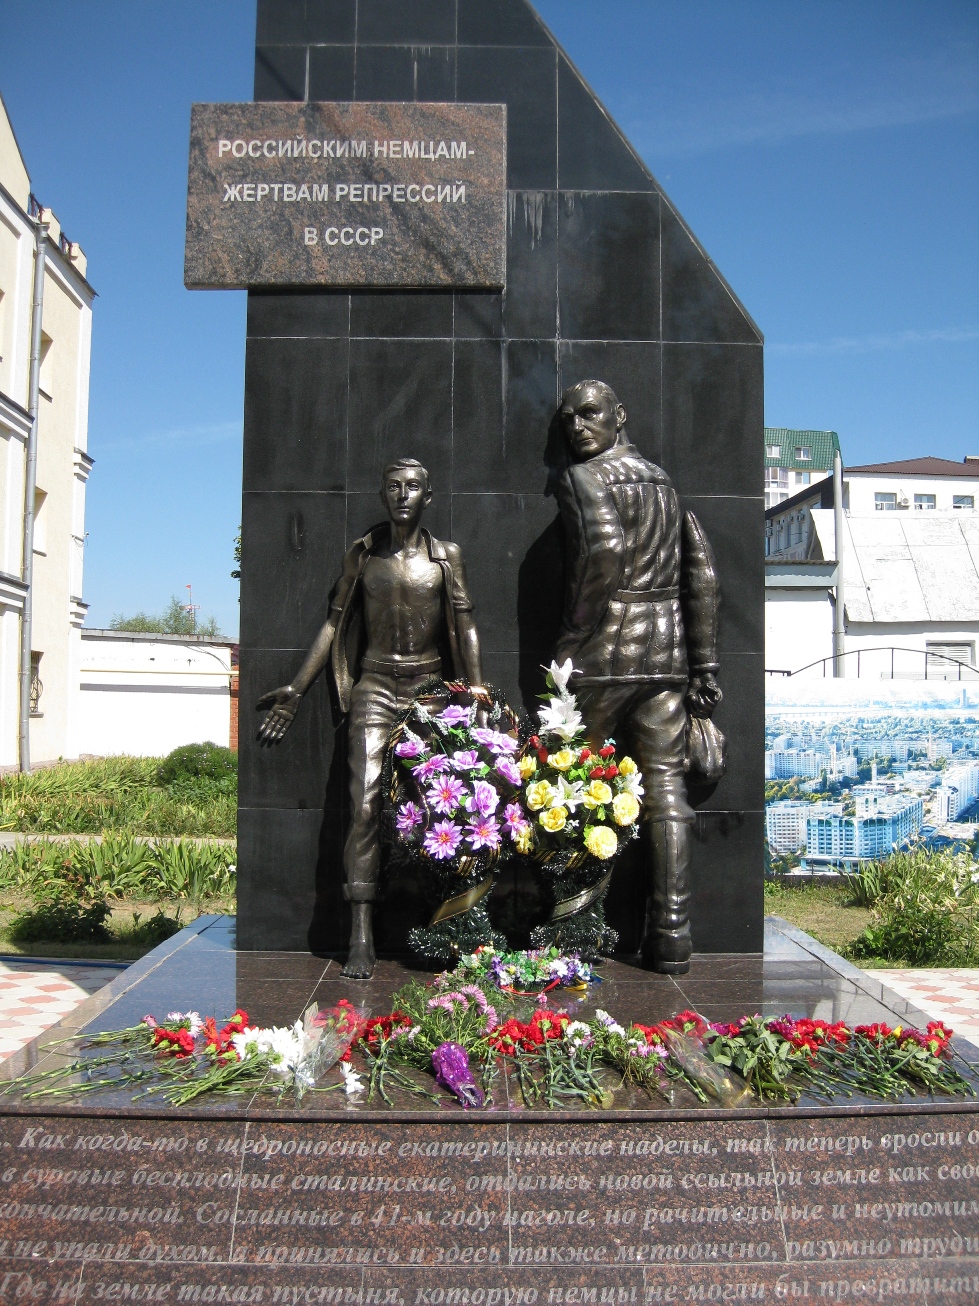 Памятник российским немцам-жертвам репрессий в ссср